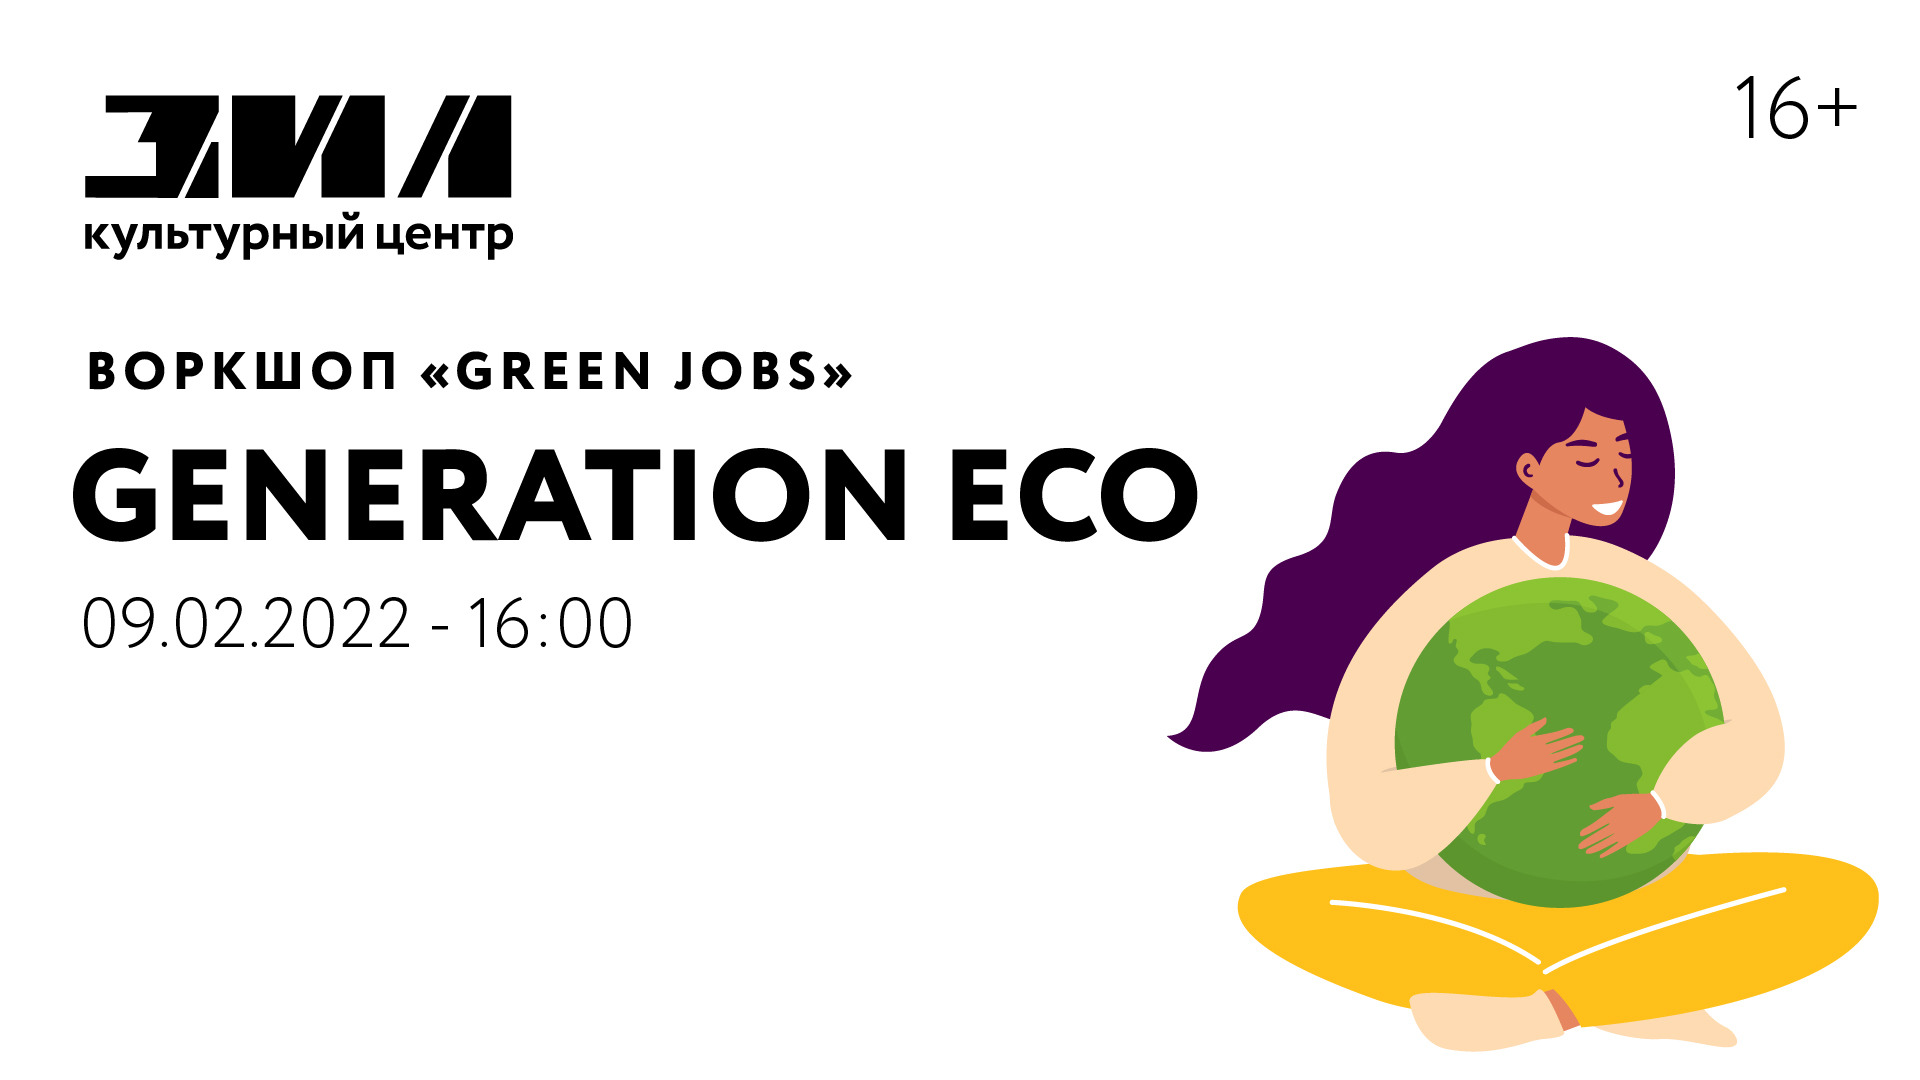 Воркшоп «Green jobs» / Generation Eco